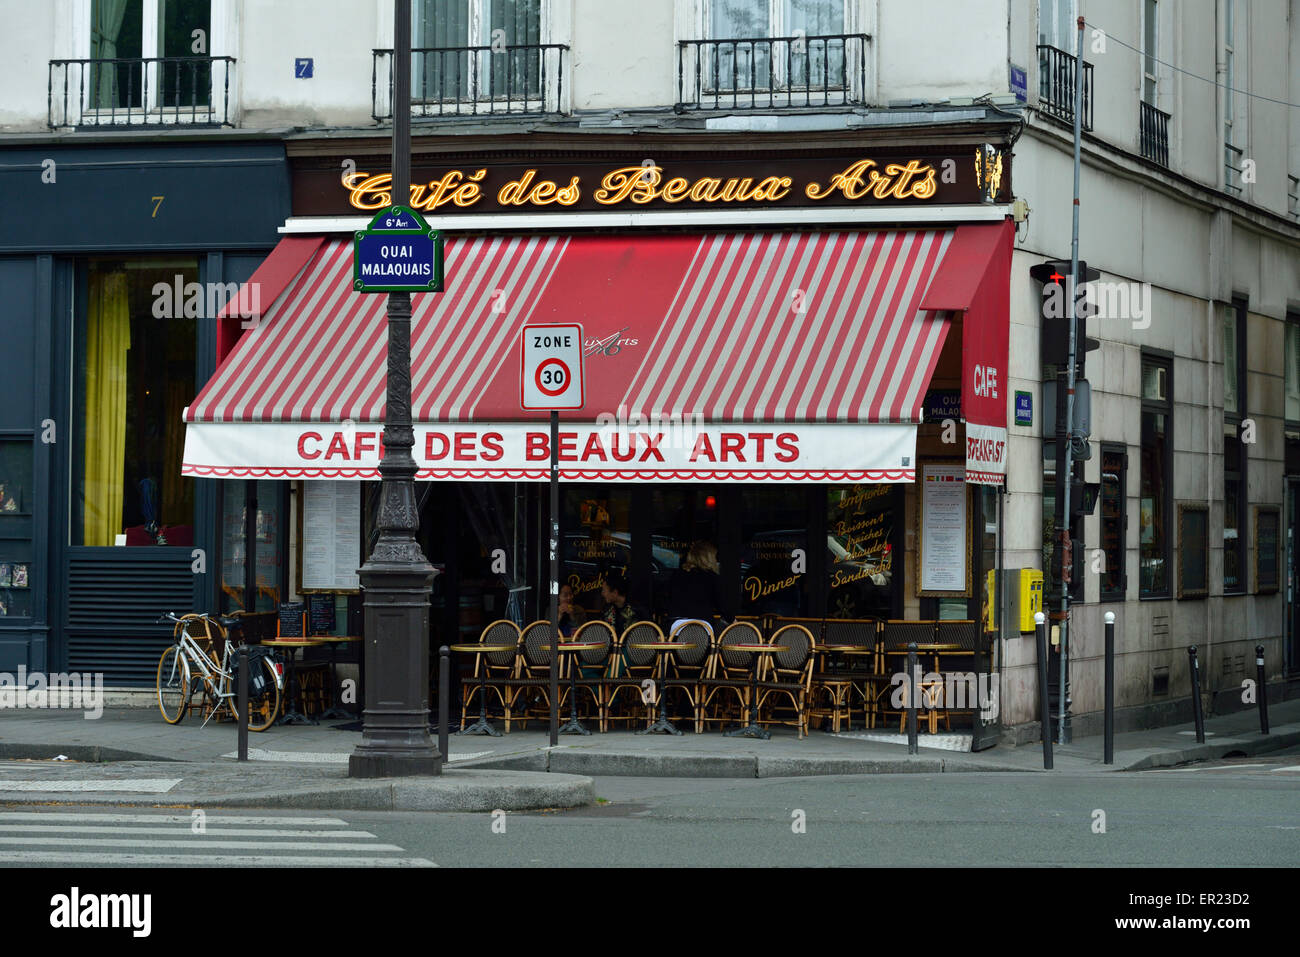 Cafe des Beaux Arts, Street Cafe Restaurant, Quai Malaquais, Paris, France Stock Photo